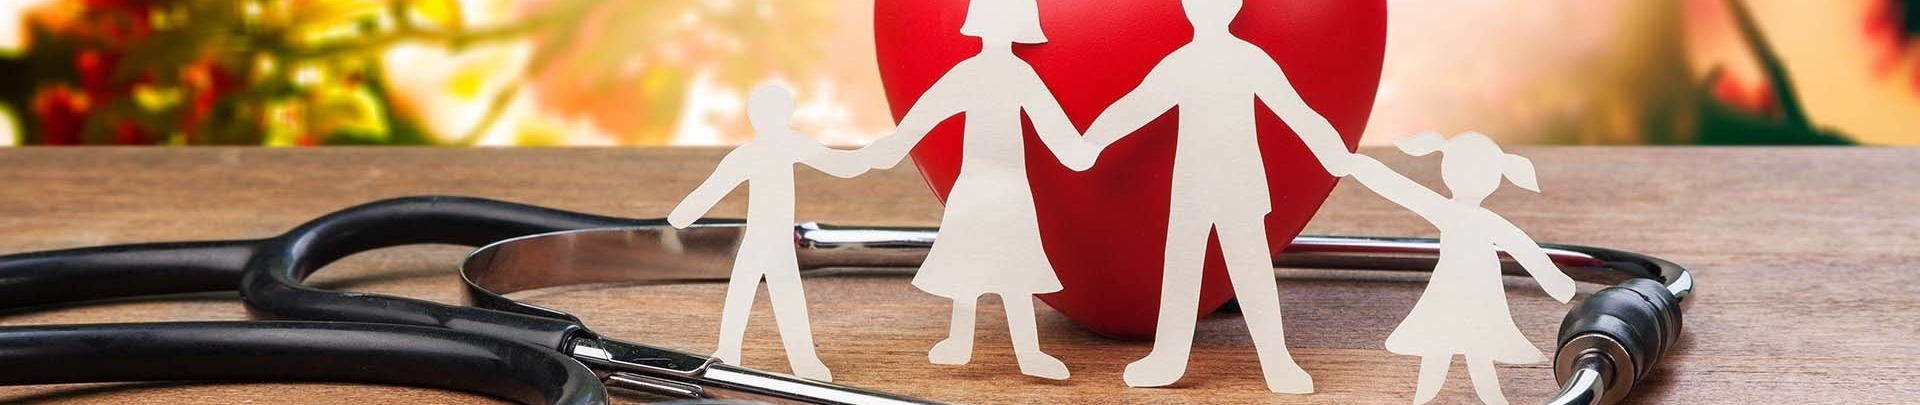 Gezondheid silhouetten van een gezin hand in hand met een stethoscoop en een rood hart